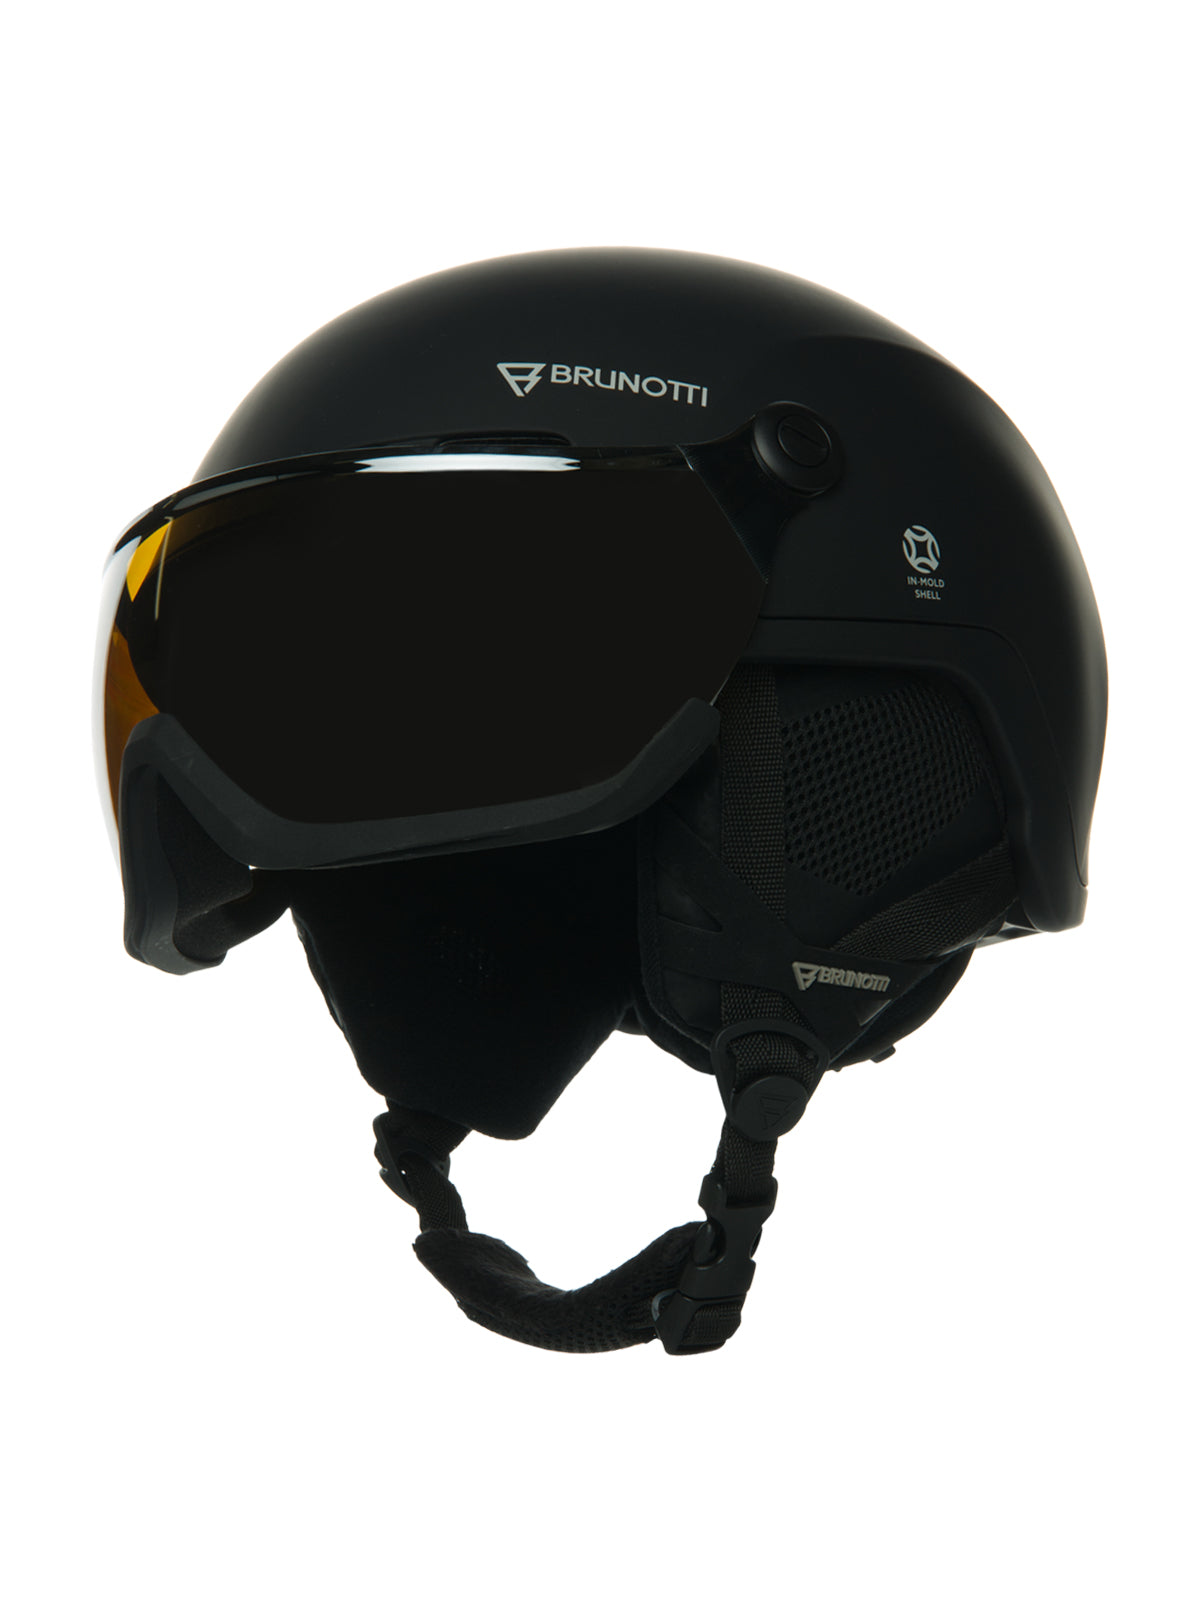 Ridge Unisex Snow Helmet